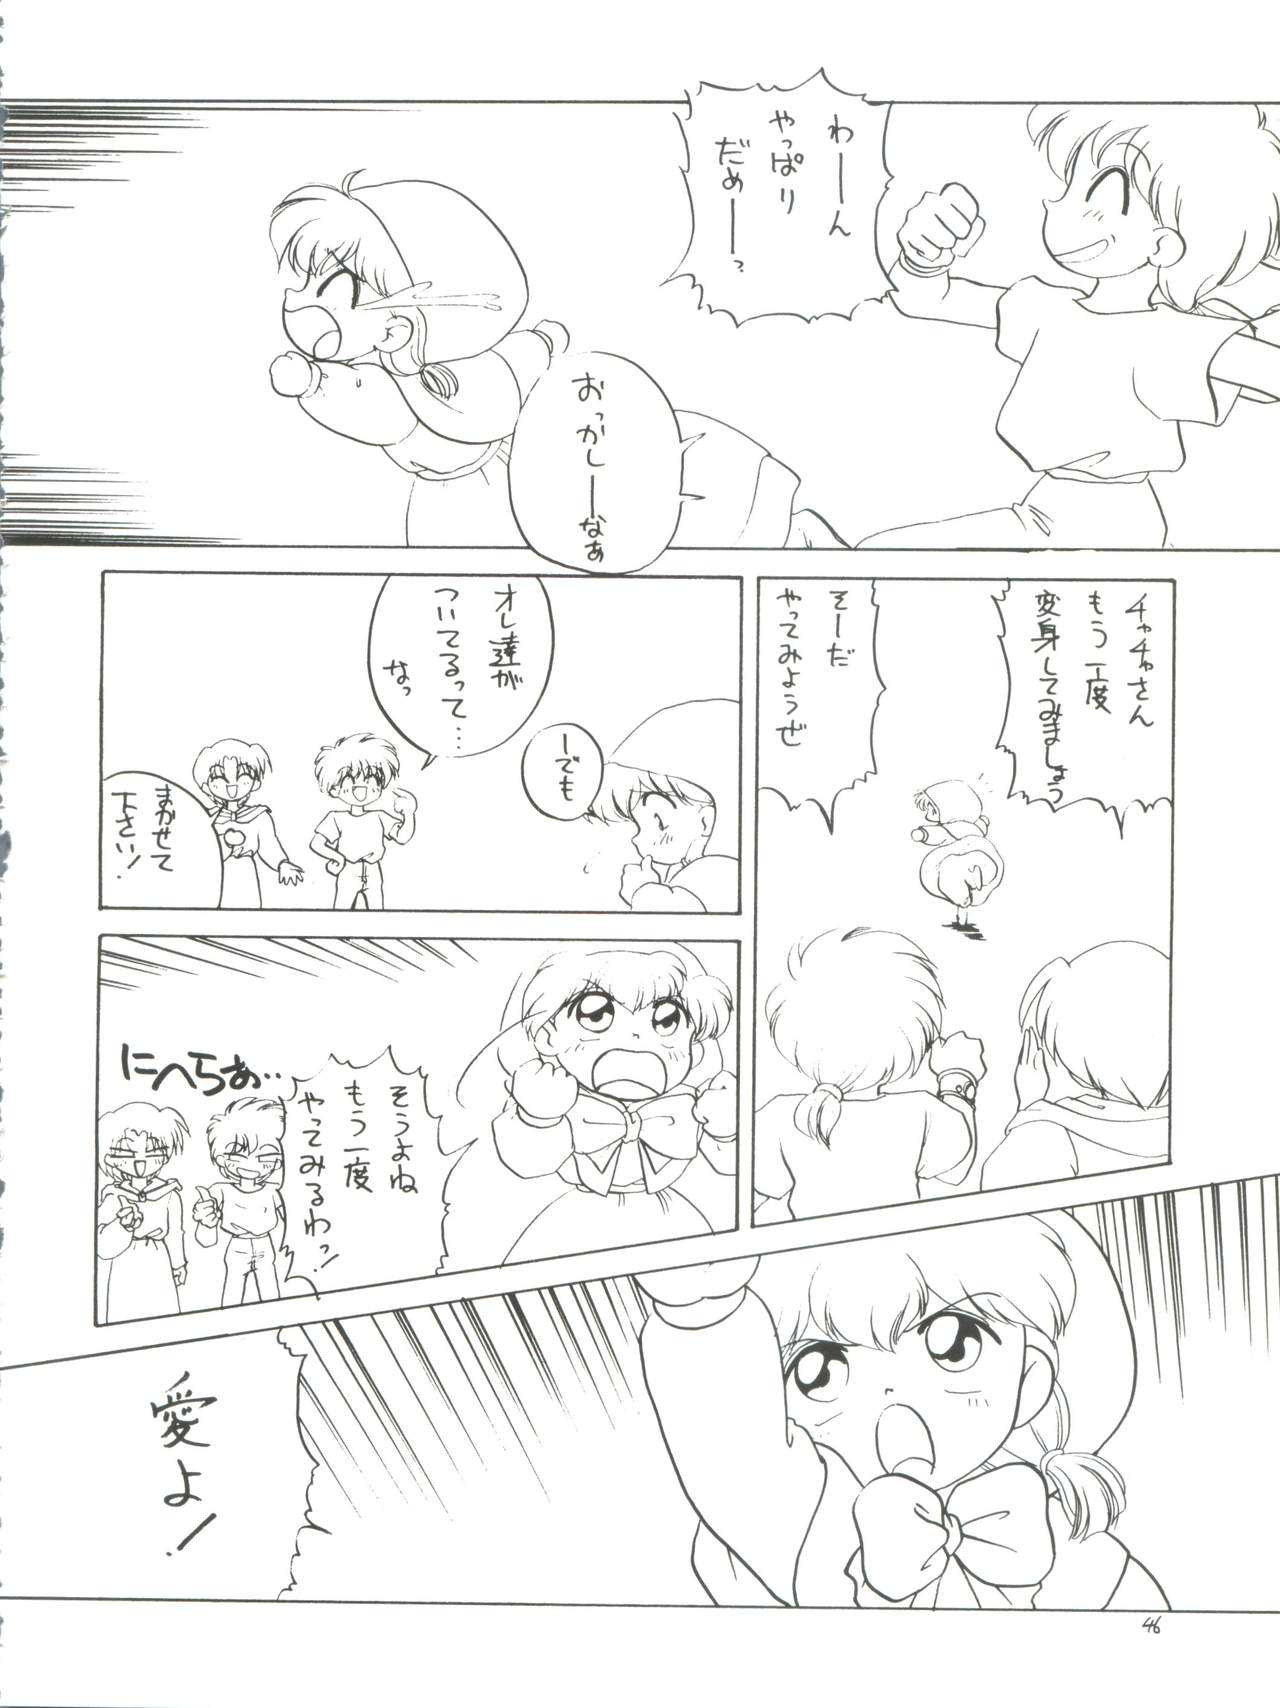 [Momo no Tsubomi (Various)] Lolikko LOVE 4 (Various) page 46 full